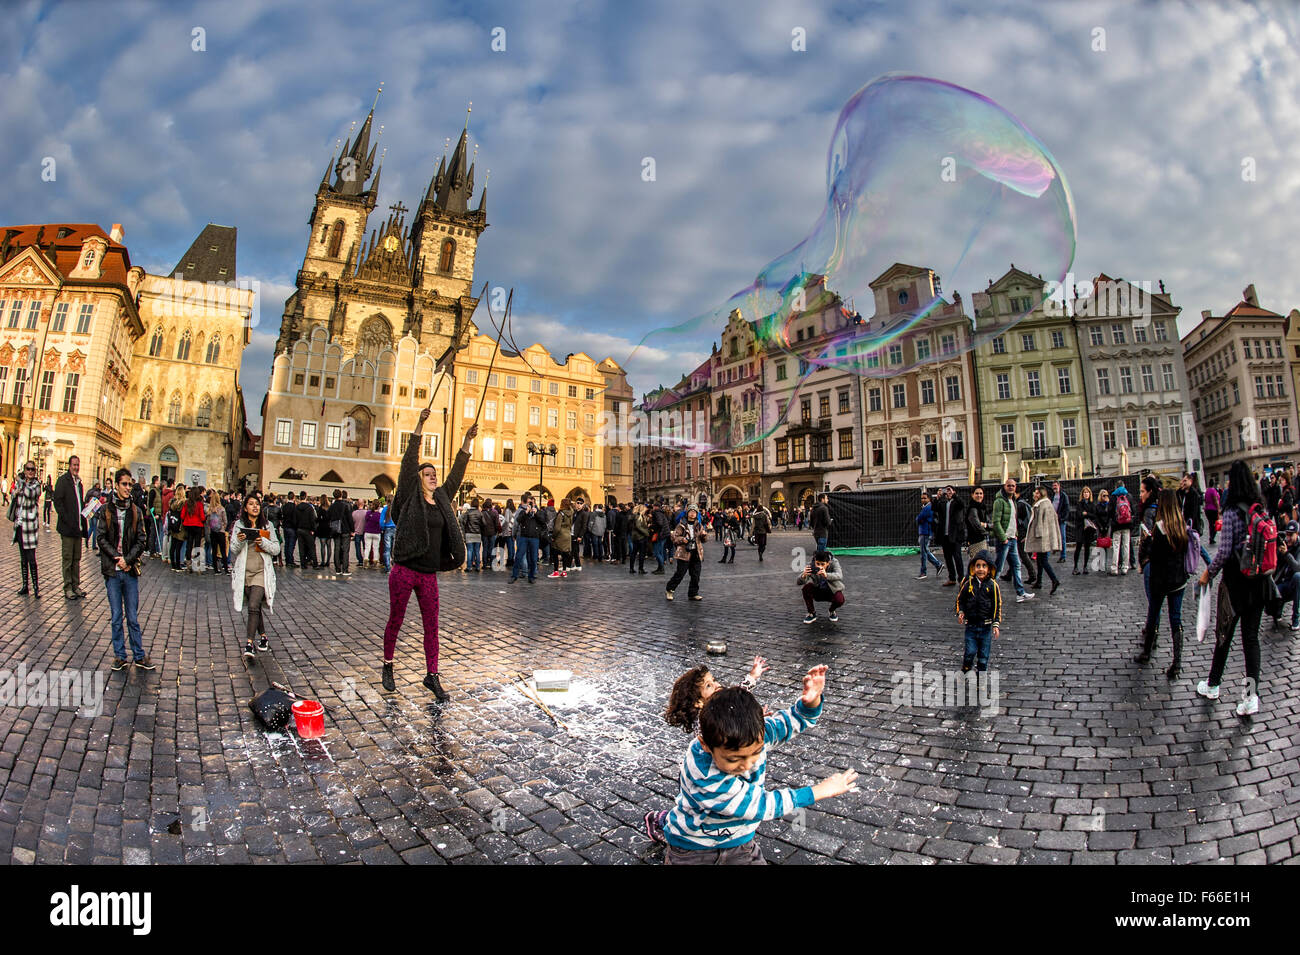 Huge bubbles being blown in Staroměstské náměstí Stock Photo